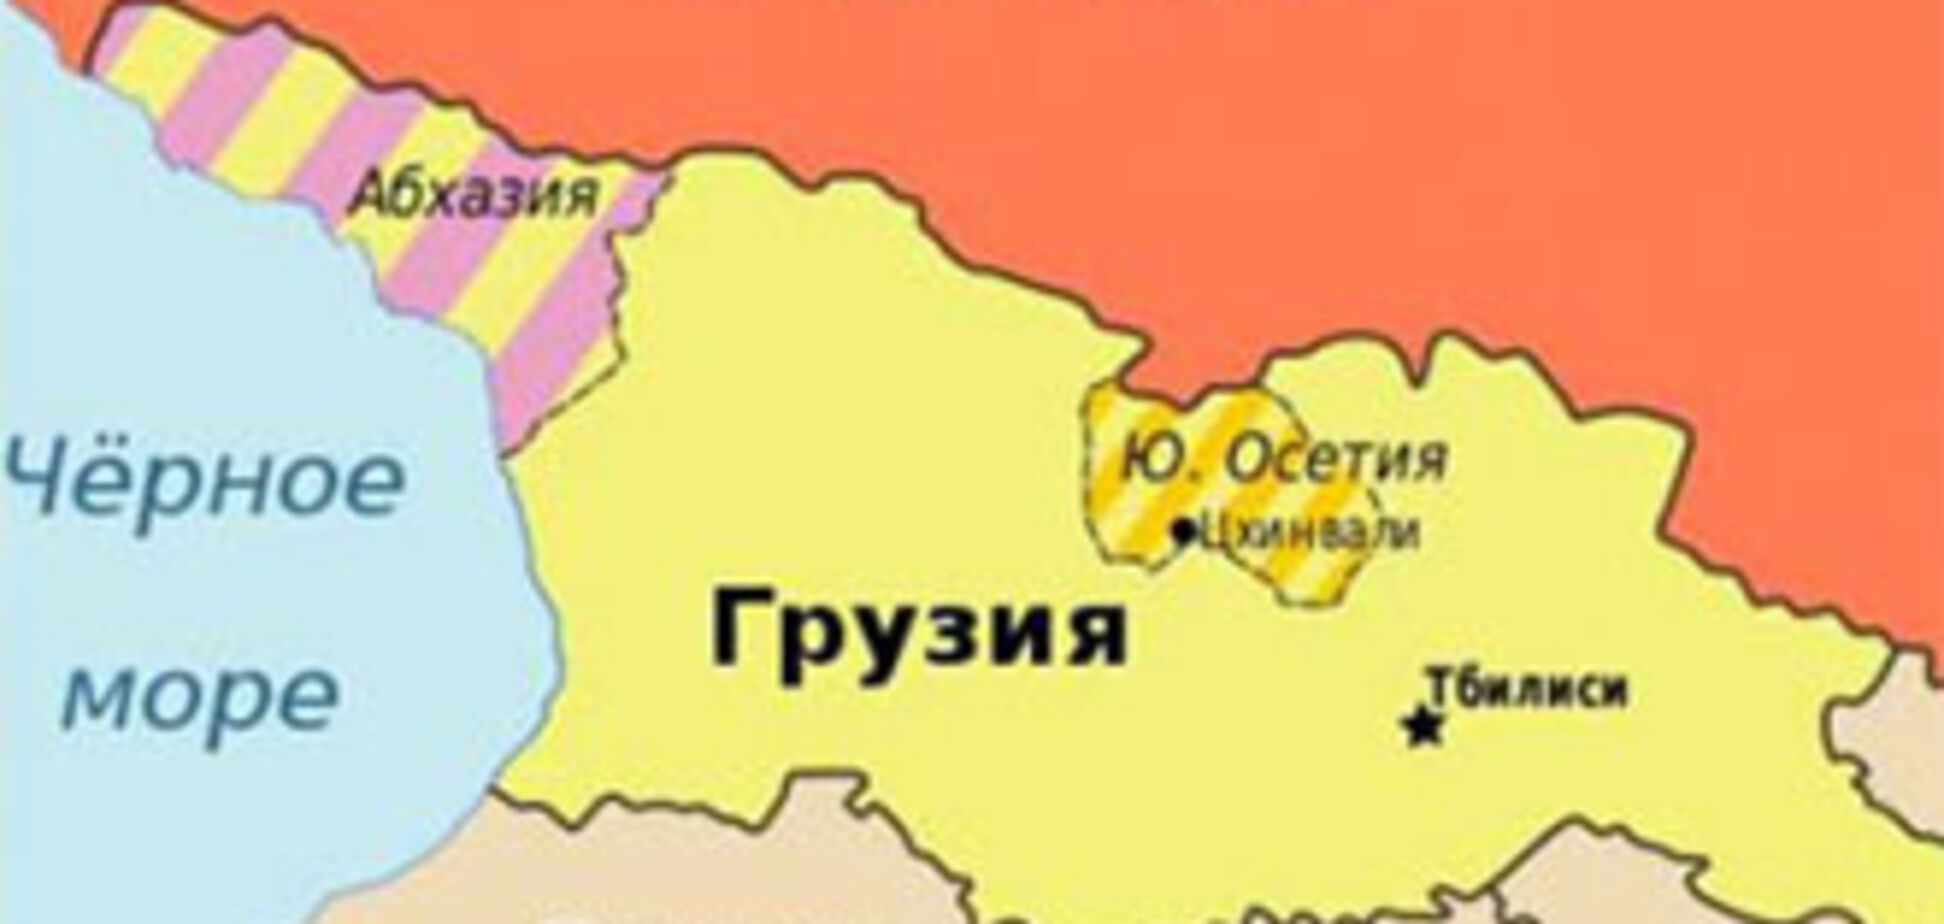 США никогда не согласятся с оккупацией РФ Абхазии и ЮО